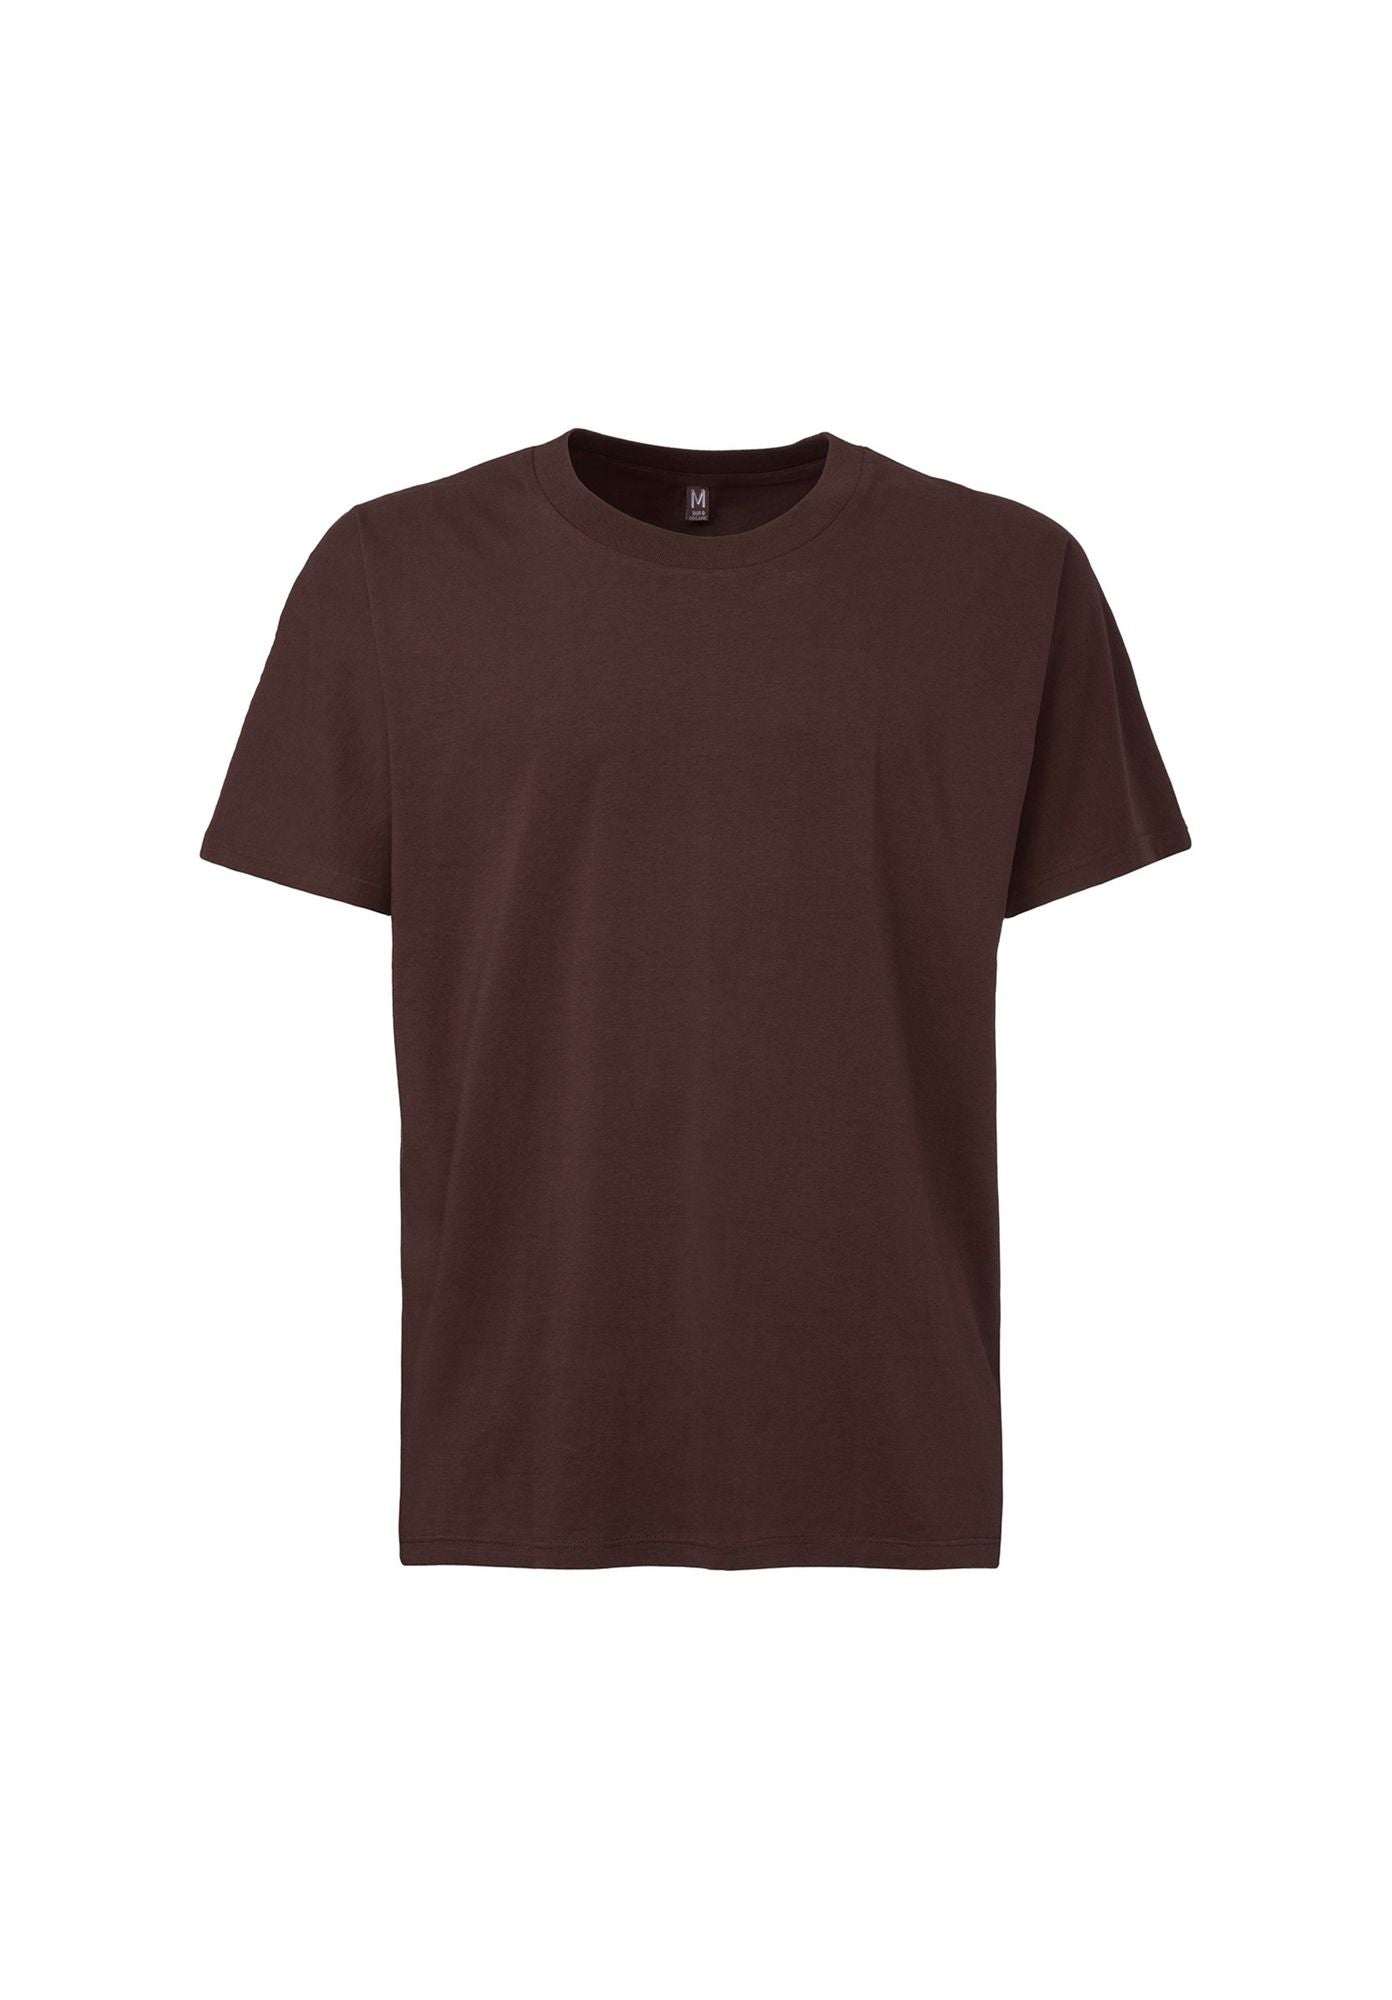 TT02 T-Shirt Chocolate (XL und XXL)